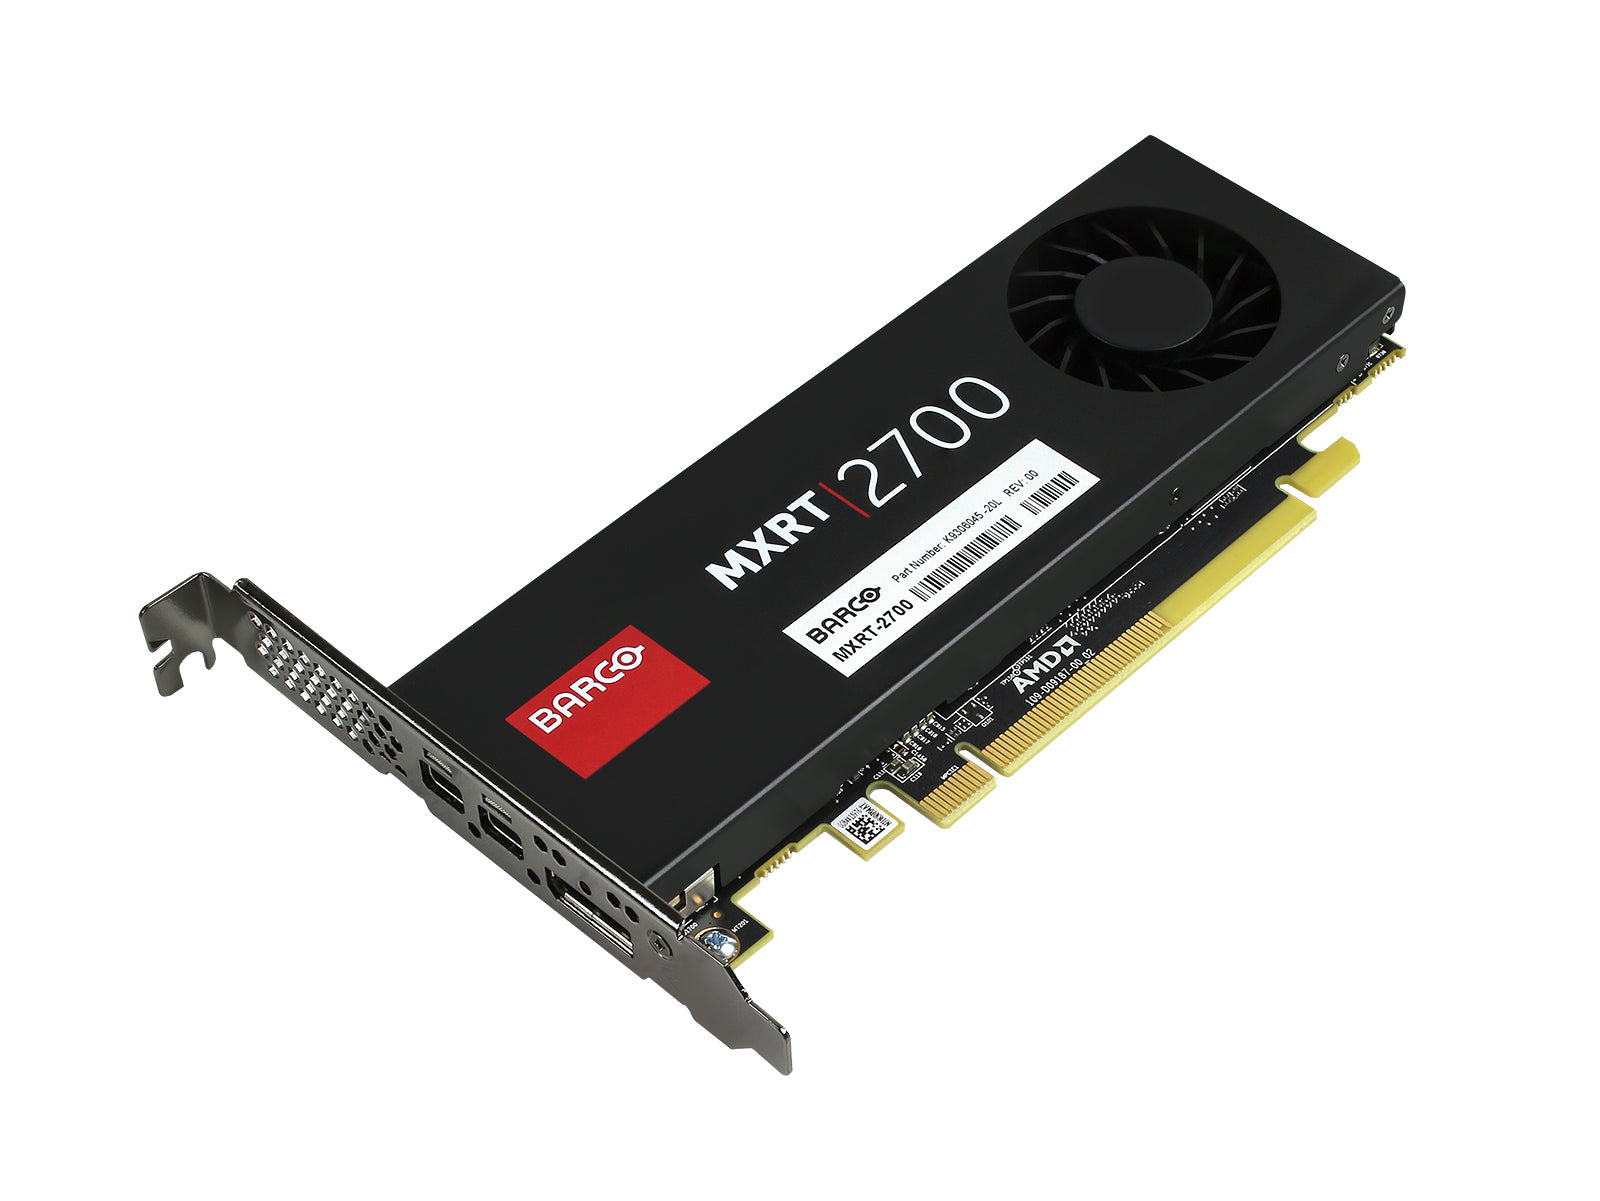 Barco MXRT-2700 2GB Small Form Factor Graphics Card (K9306045) Monitors.com 